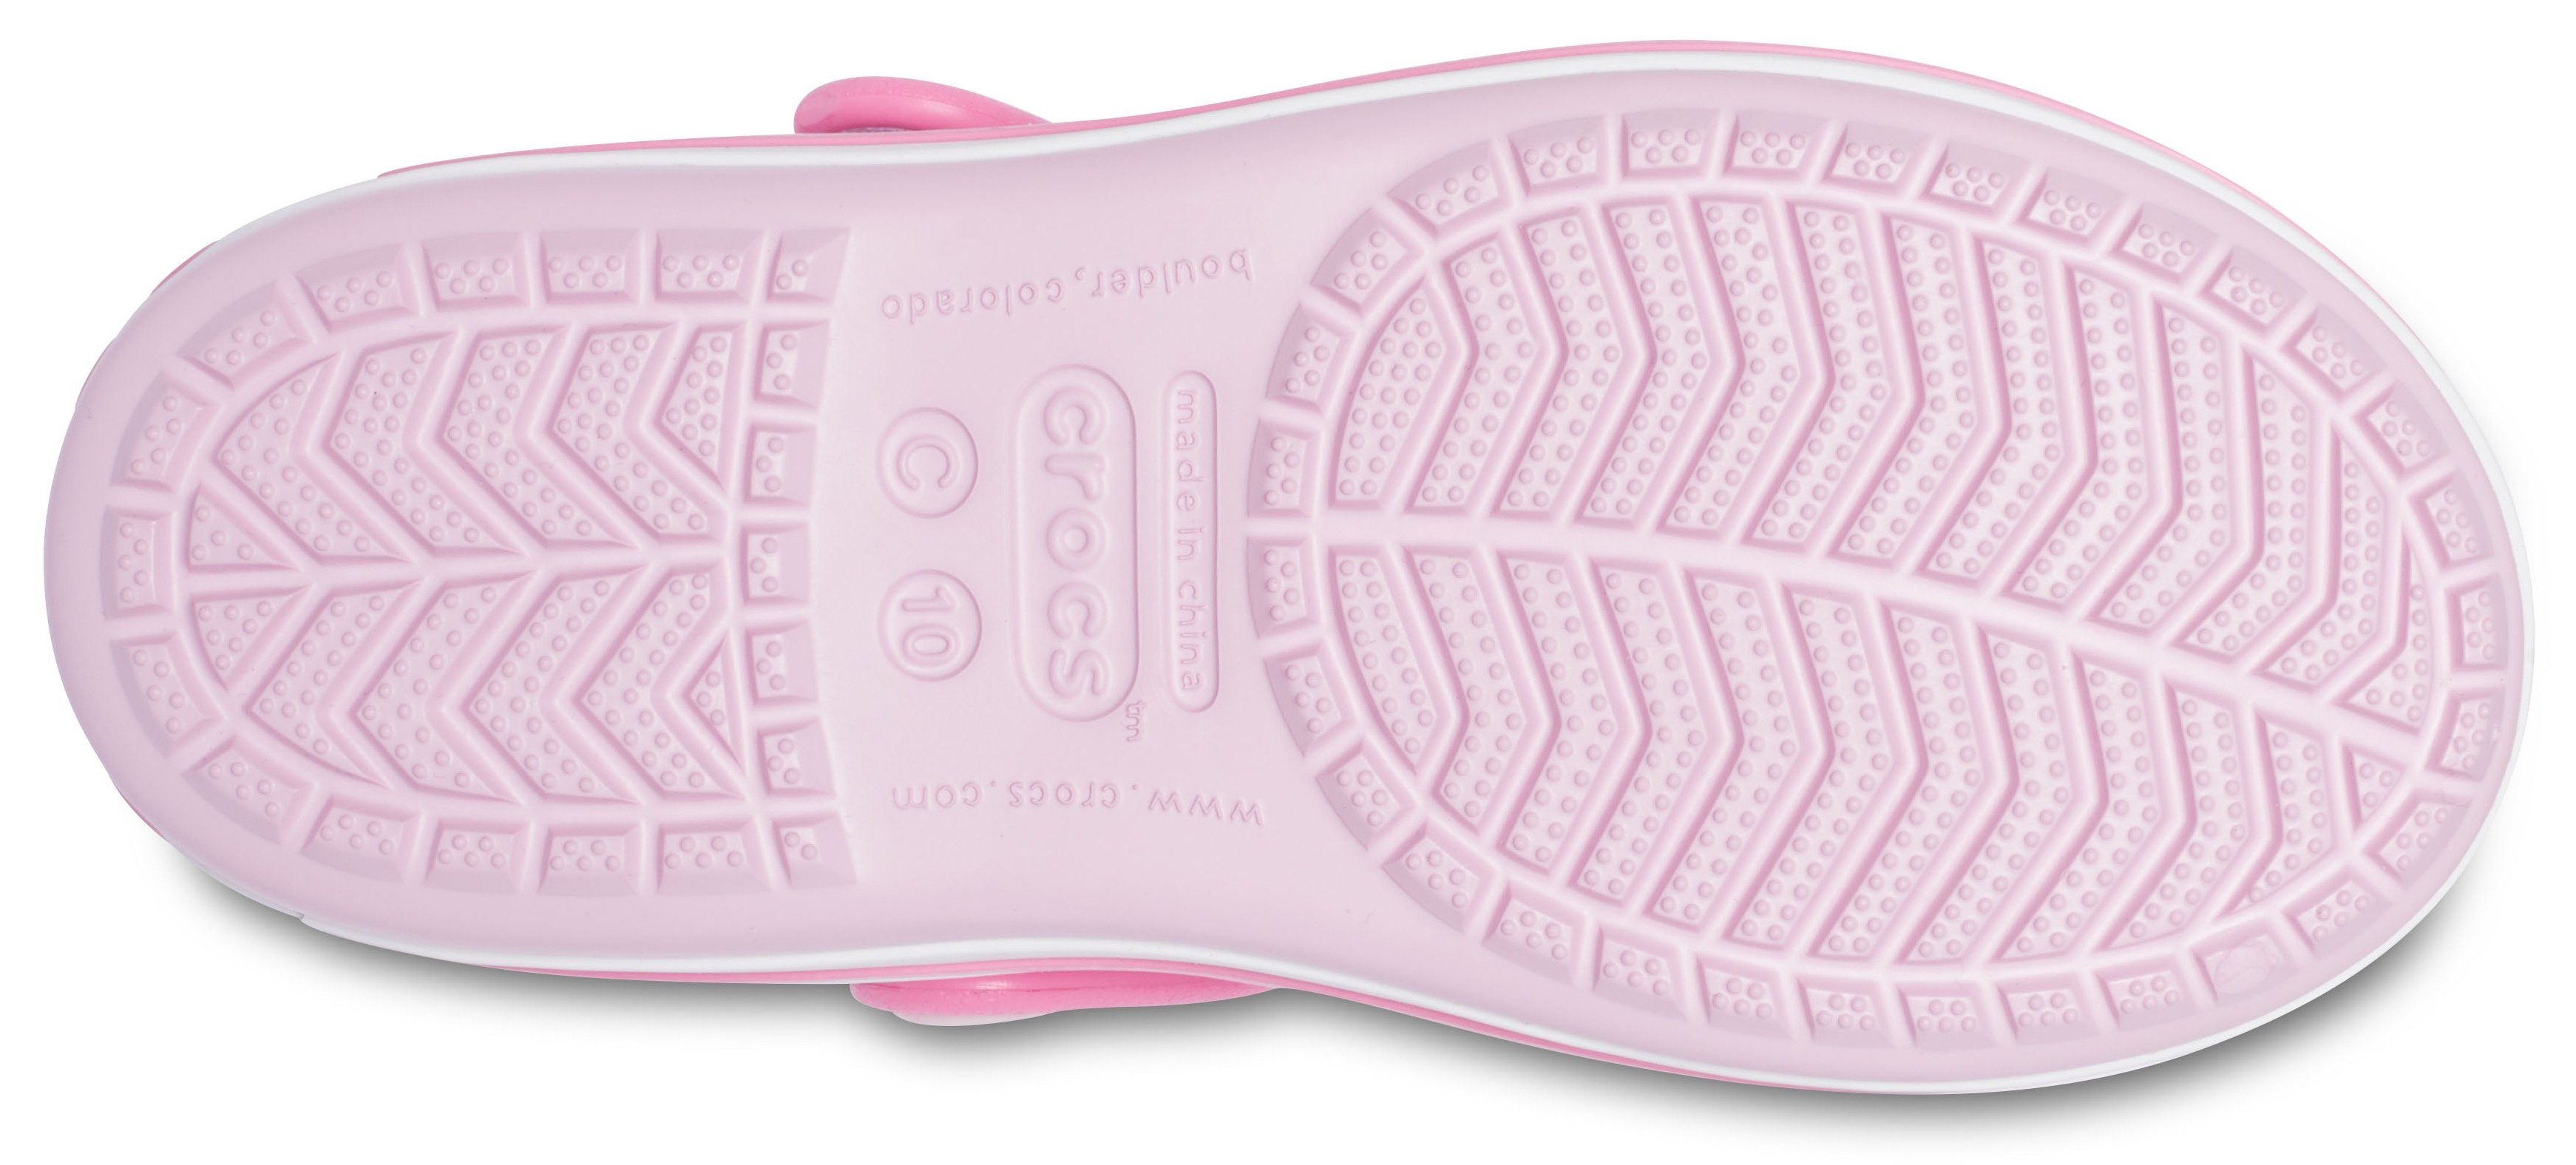 mit Crocband Klettverschluss Crocs Badesandale rosa-pink praktischem